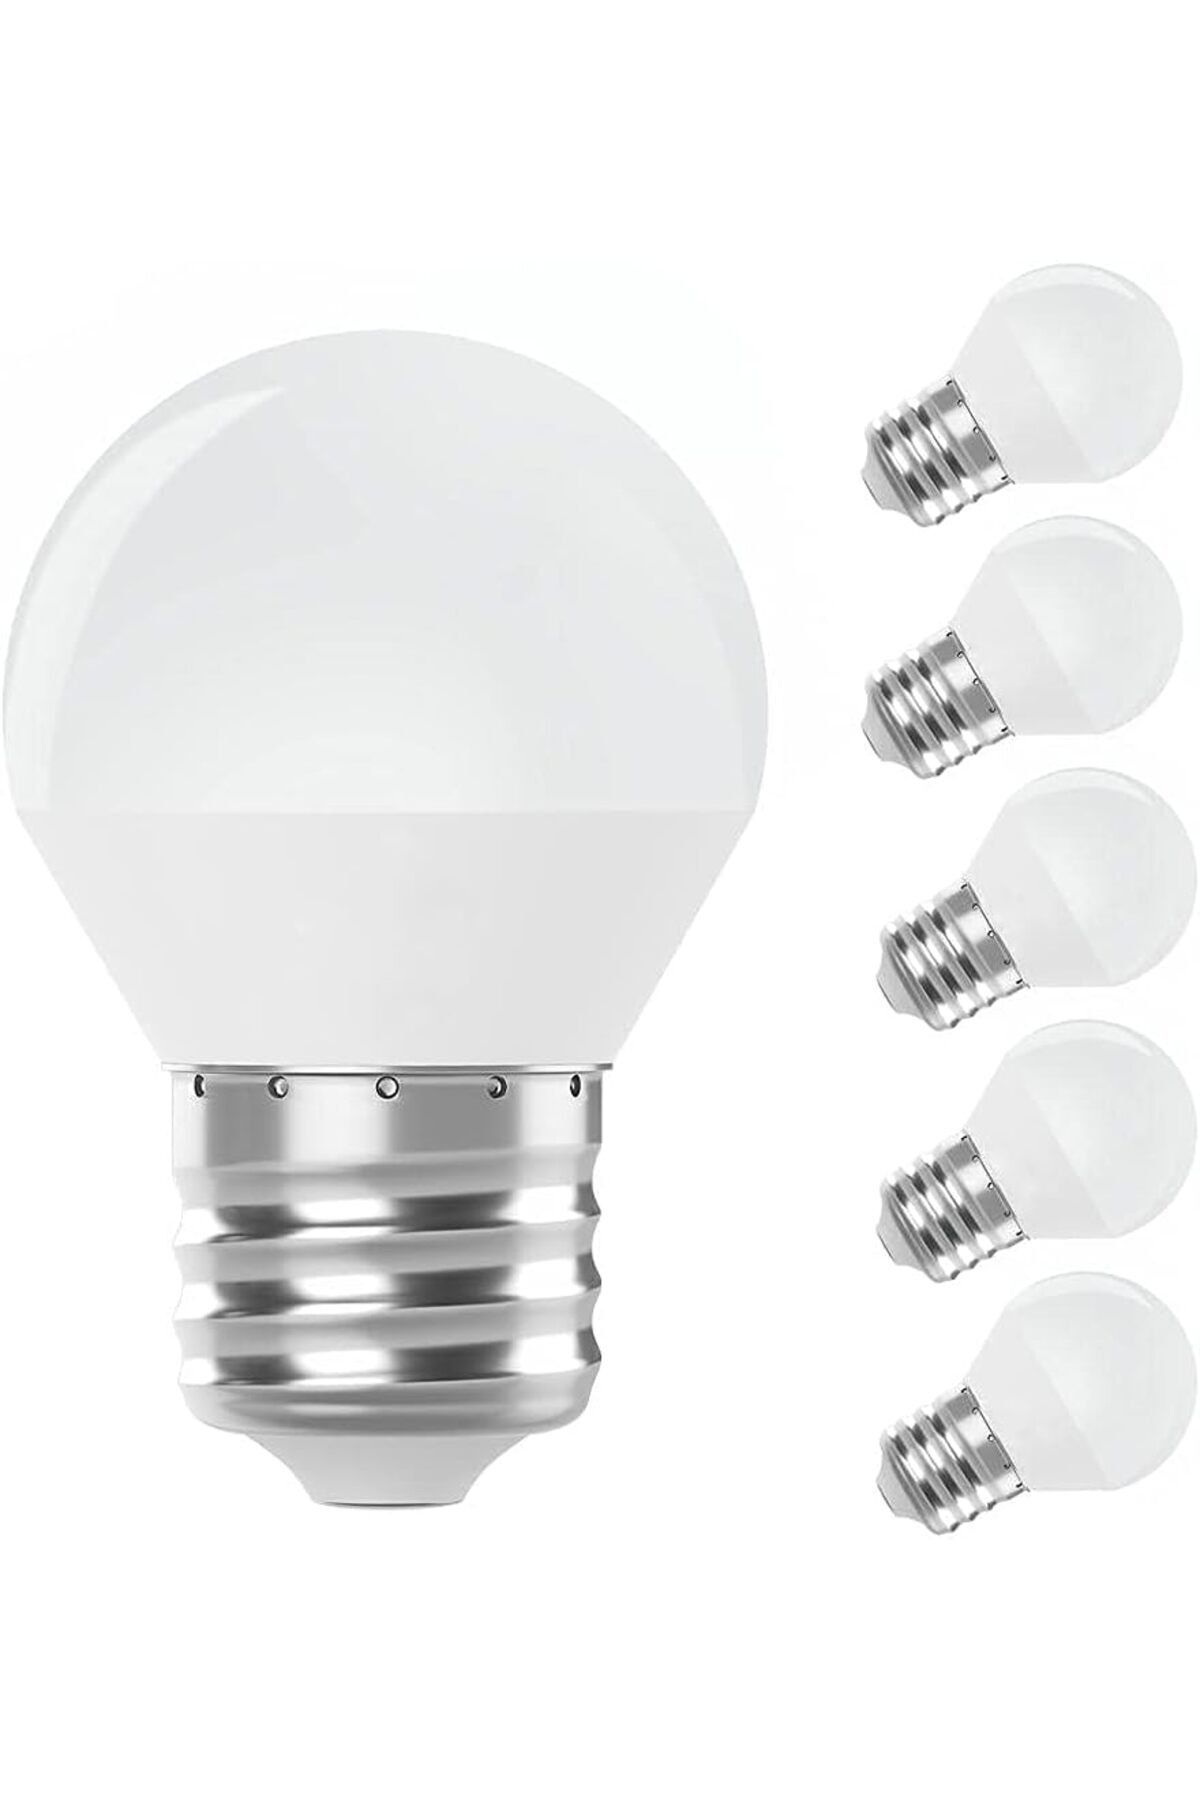 GAE 5 W Mini Top LED Ampul E27 Beyaz Işık / Gece Lambası Led 5 ADET